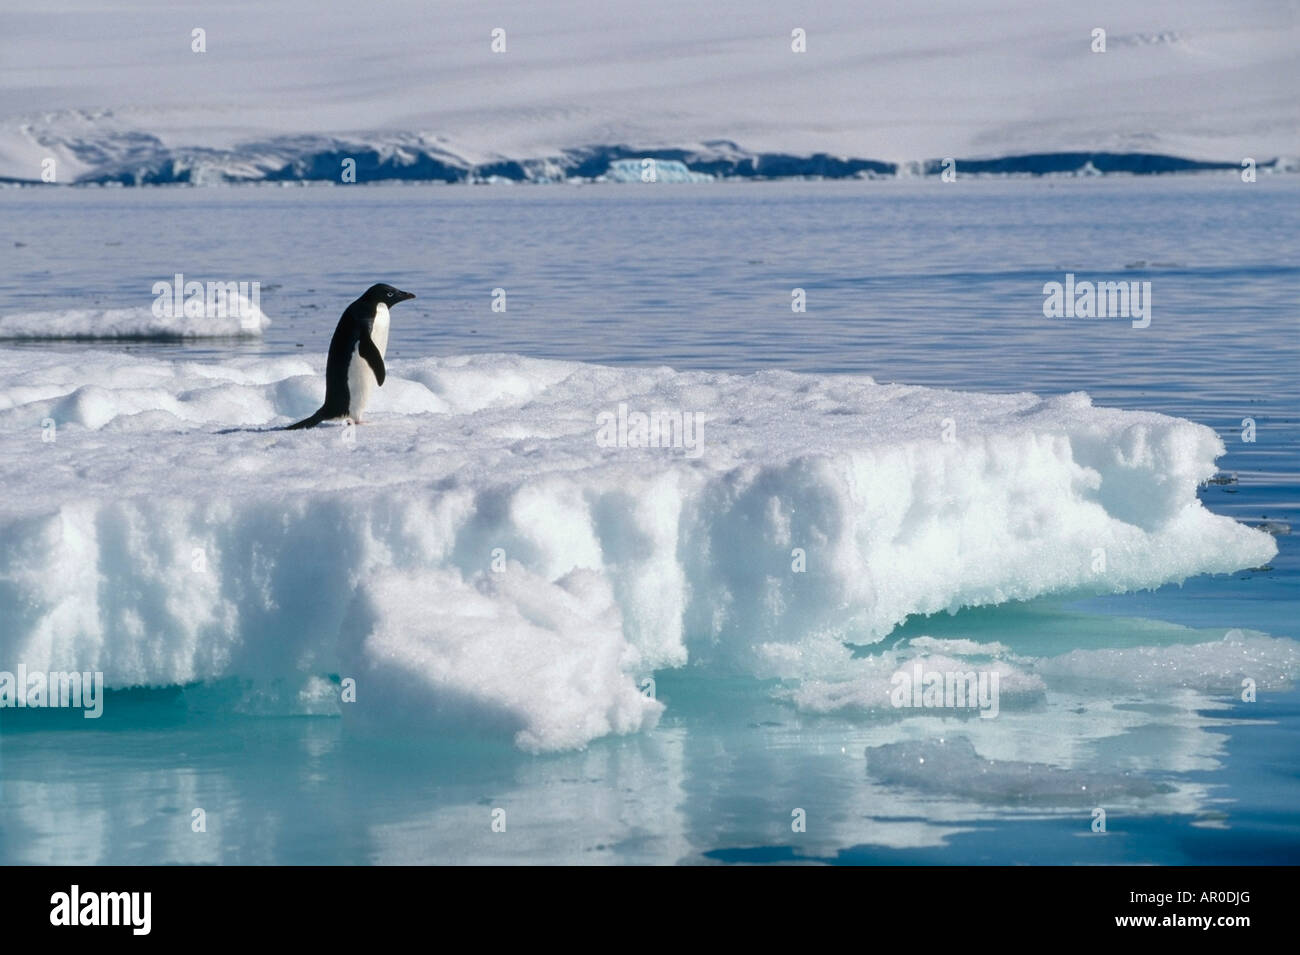 Adelie Penguin on Iceberg Antarctica Stock Photo